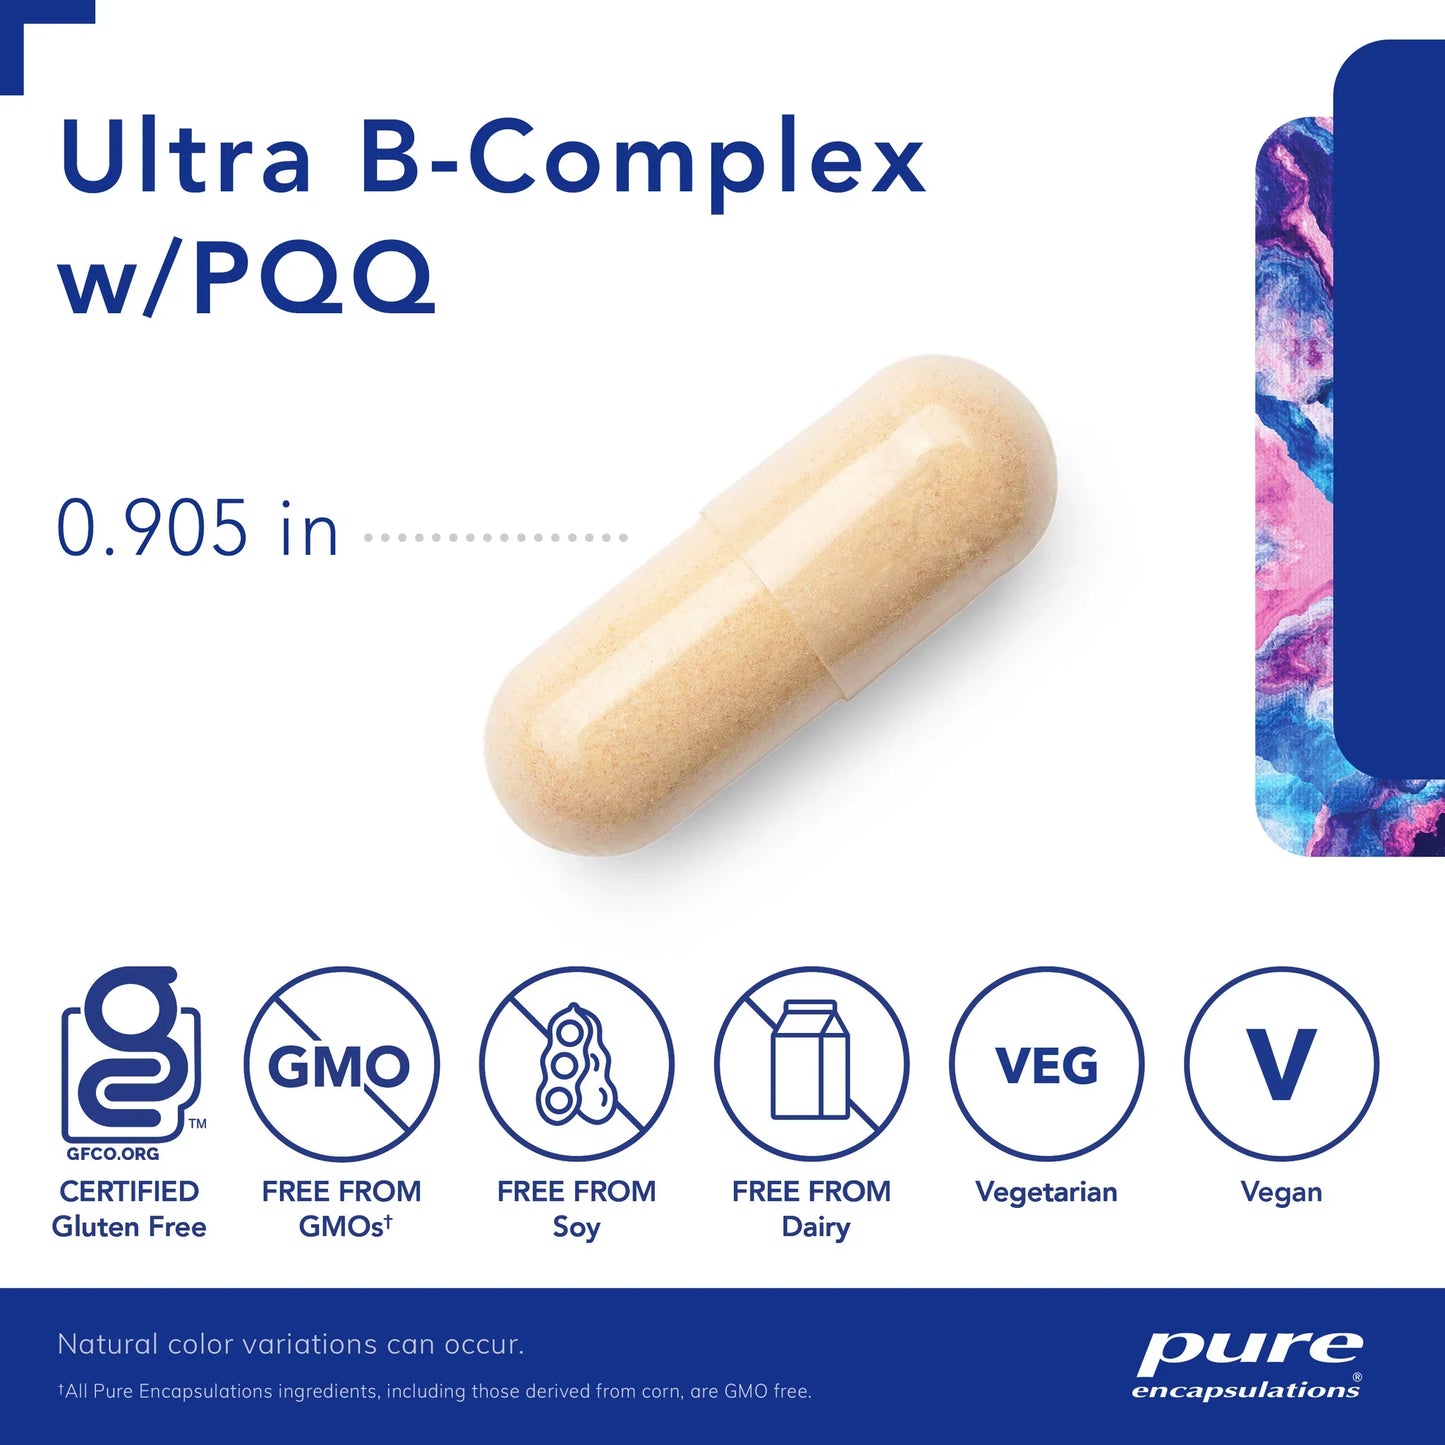 Ultra B-Complex with PQQ